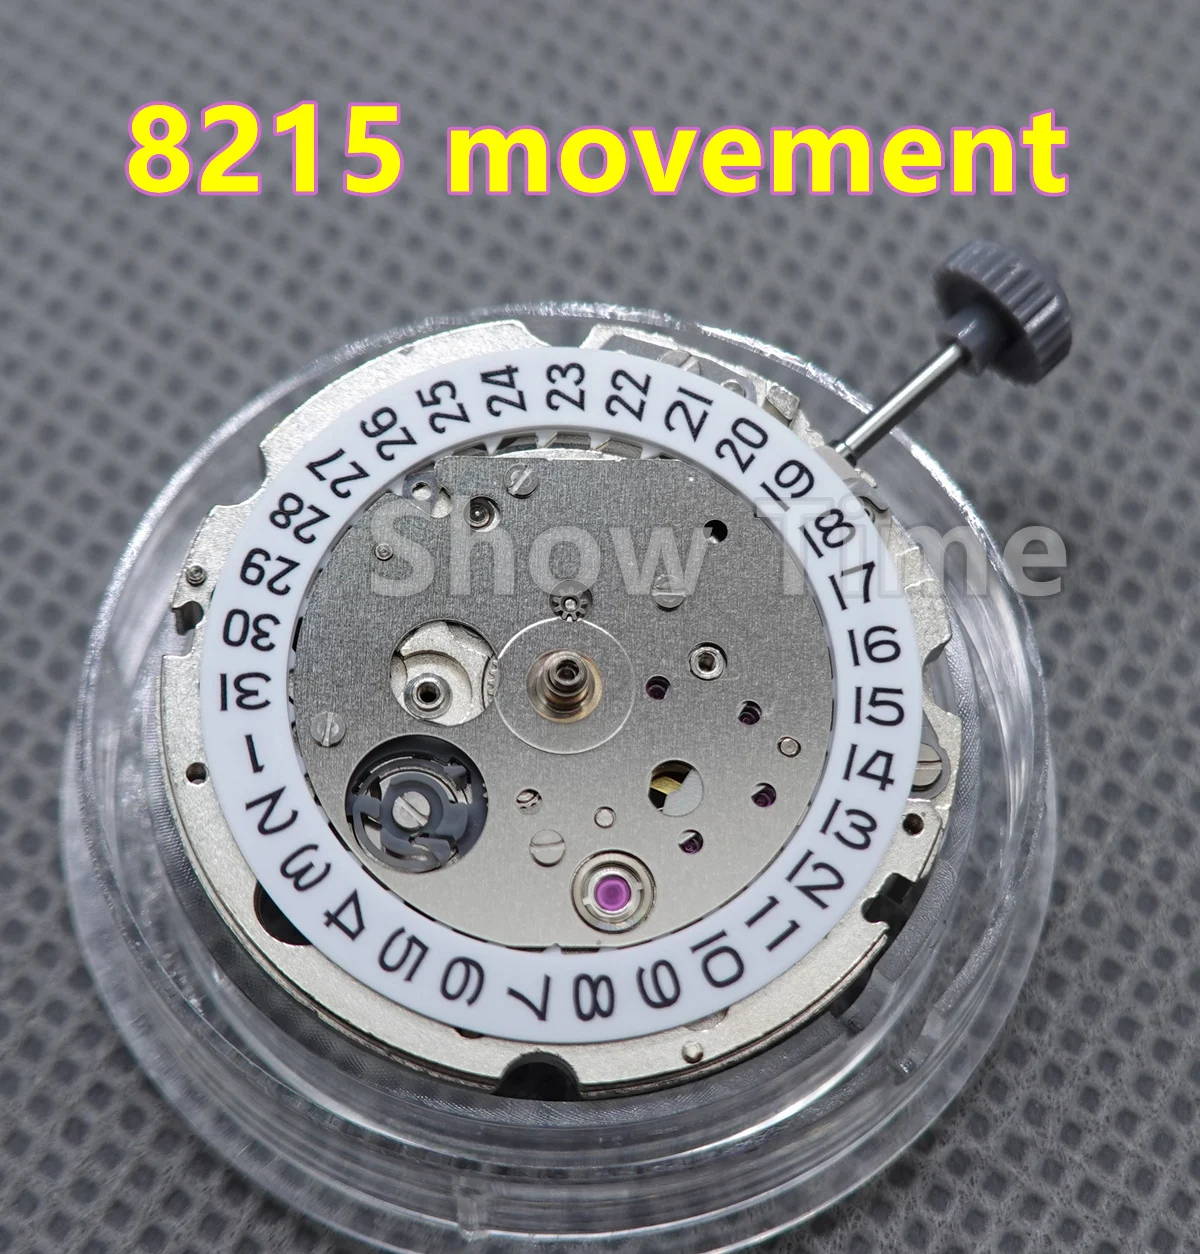 

Japan Miyota 8215 movement 21 jewels automatic mechanical date movement mens watch movements